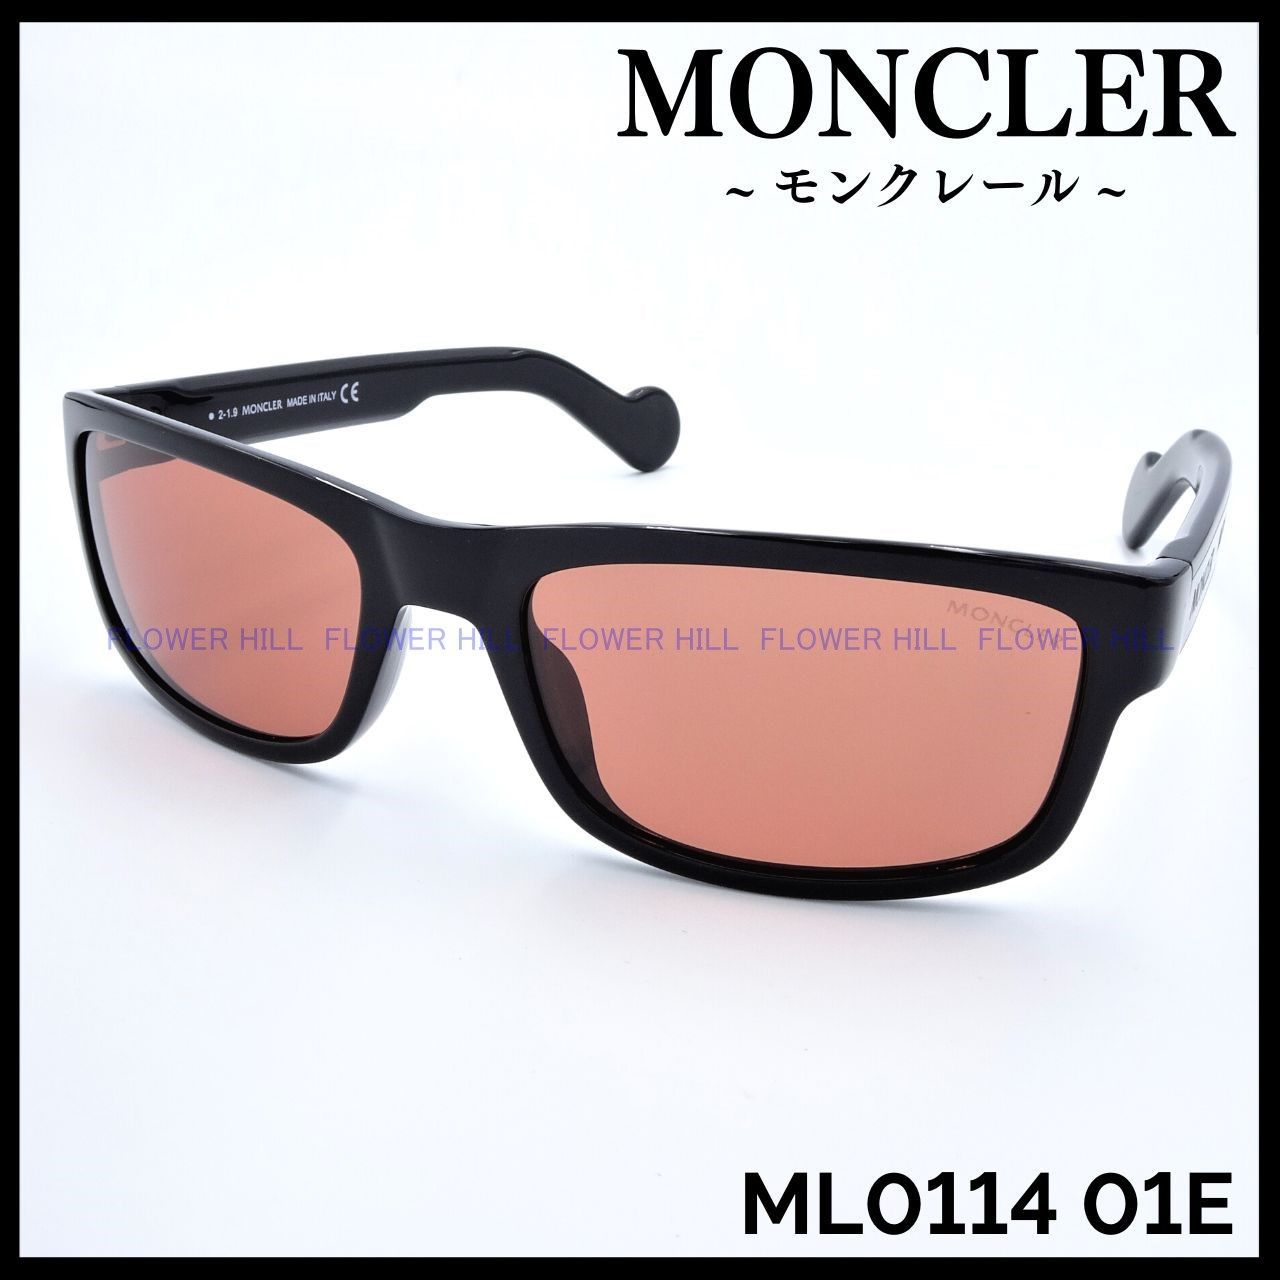 MONCLER モンクレール ML0114 01E サングラス イタリア製 ブラック 